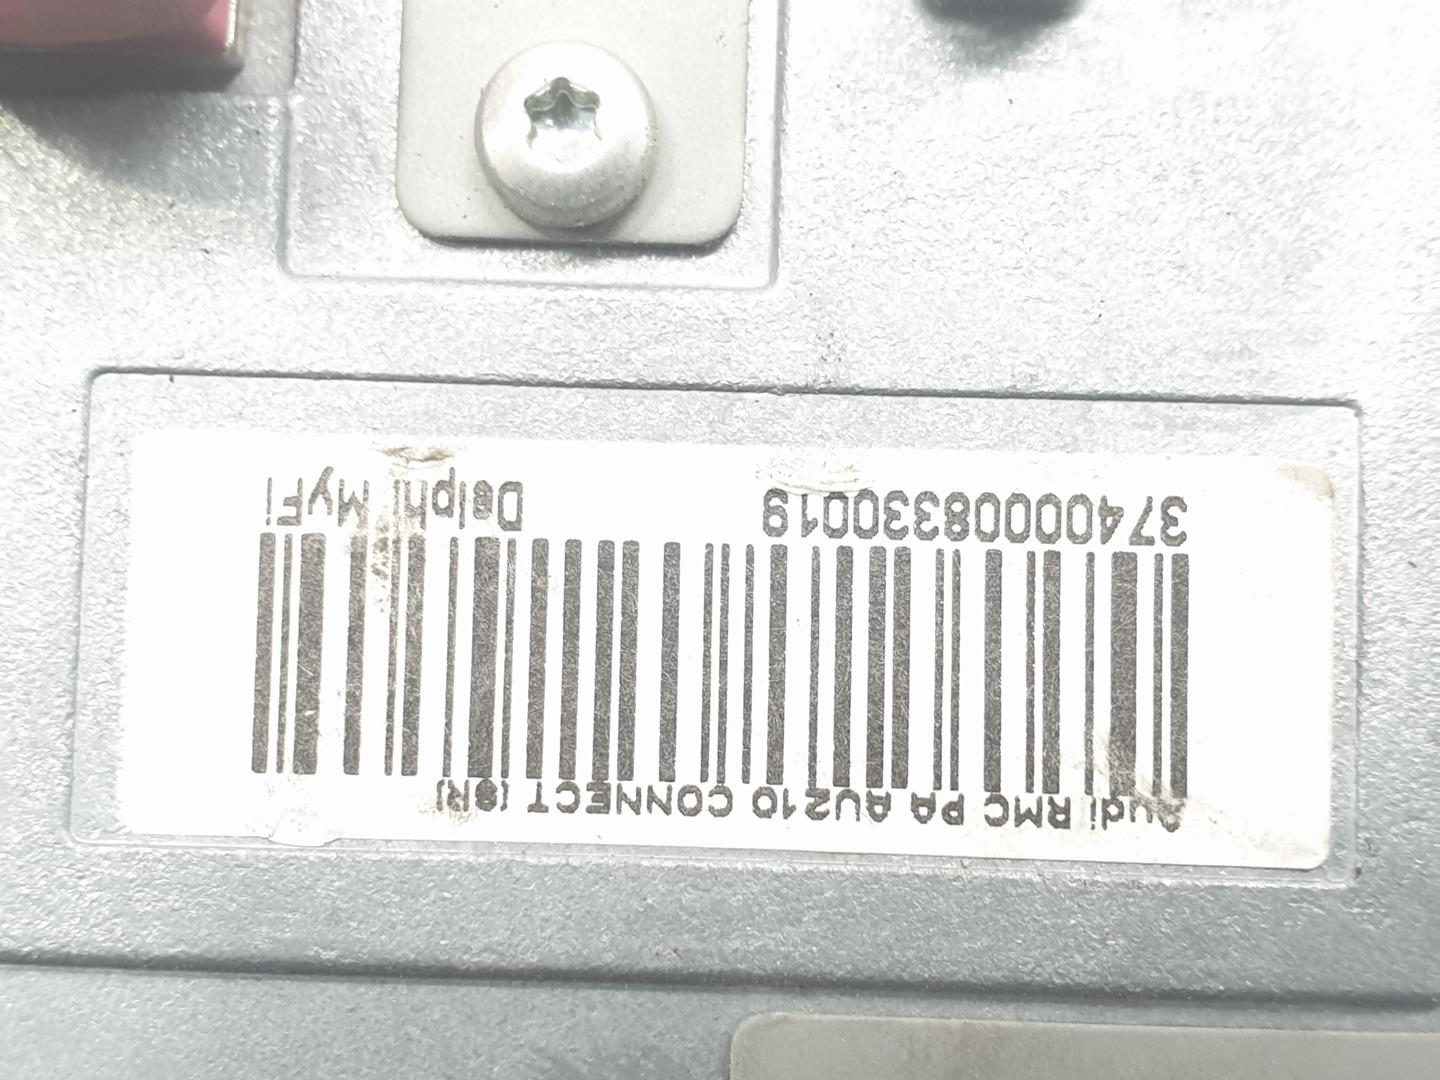 AUDI A1 8X (2010-2020) Автомагнитола с навигацией 8XA035183A, 8XA035183A 23499664